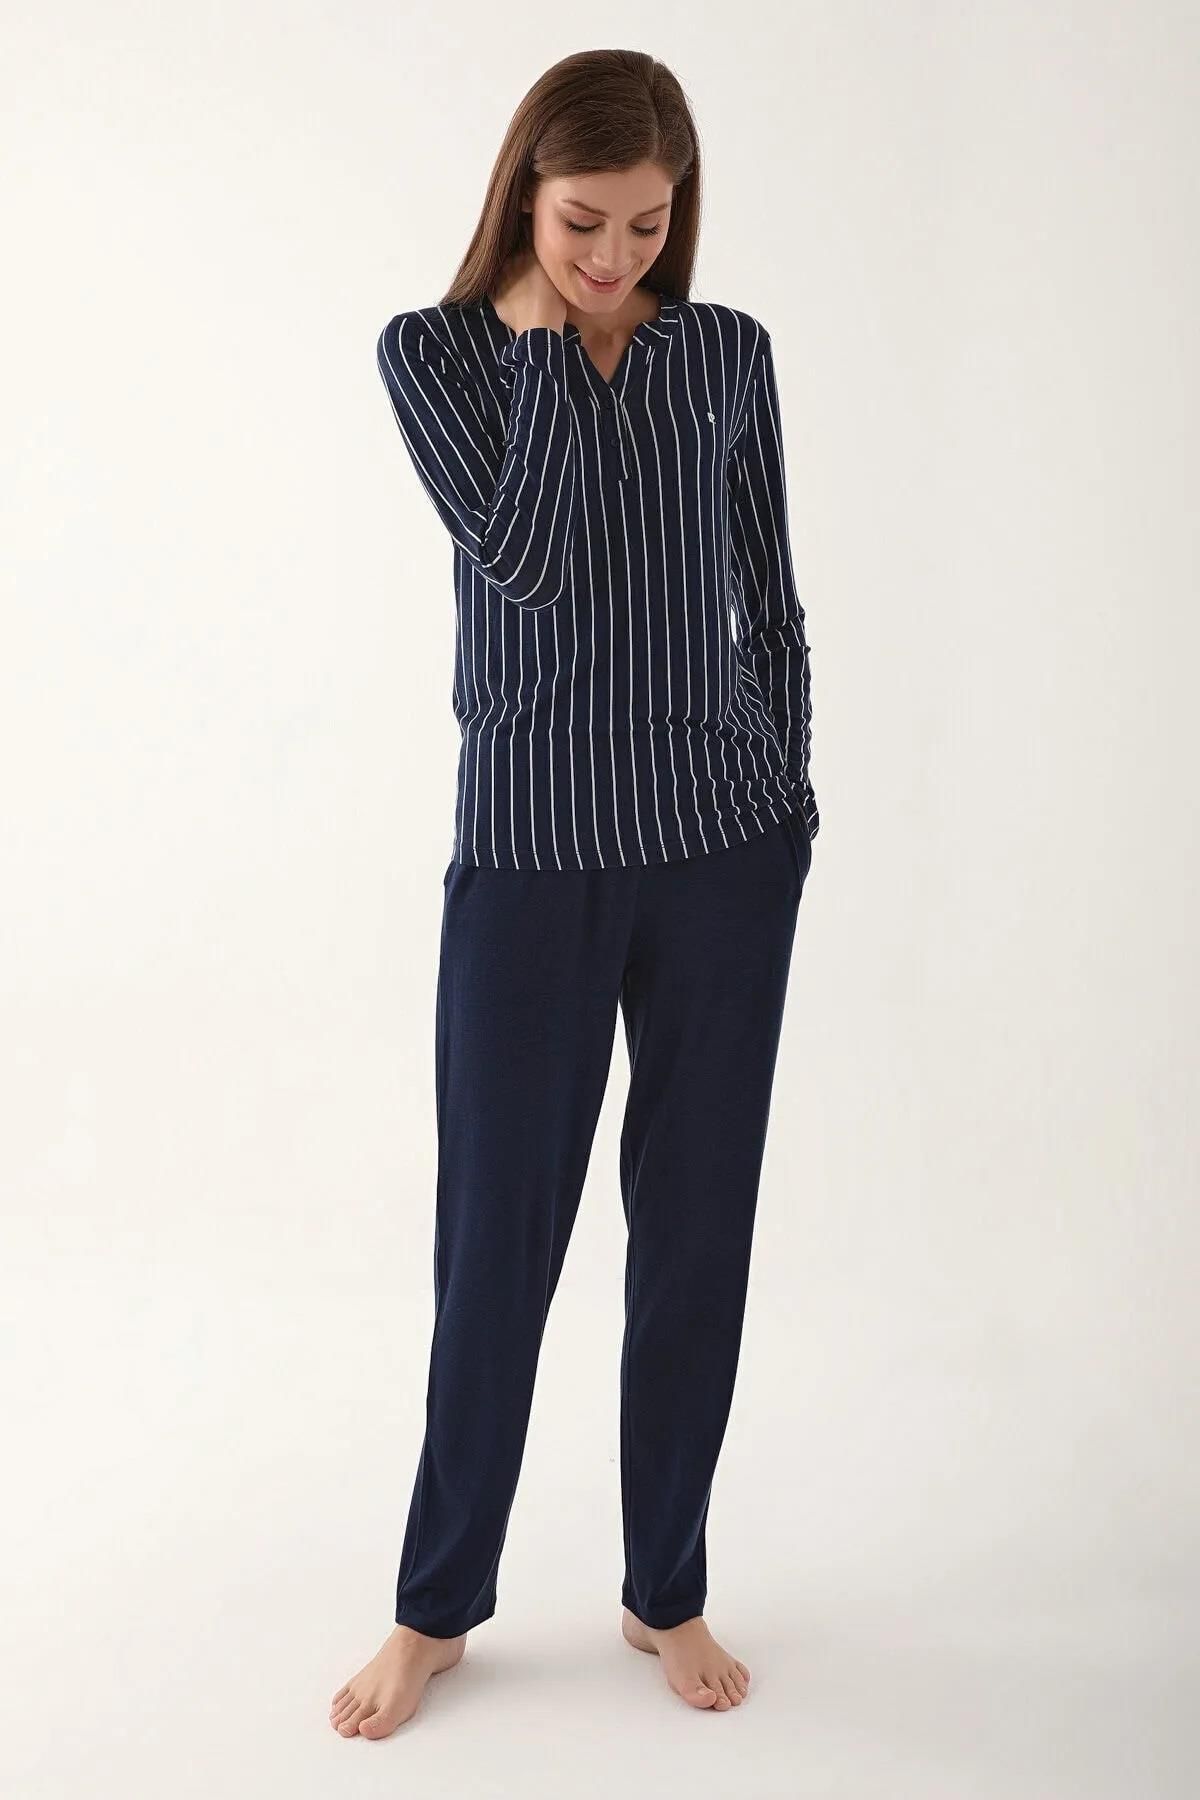 Pierre Cardin Kadın Lacivert Çizgili Pijama Takım, Büyük Beden Kadın Pijama Takım